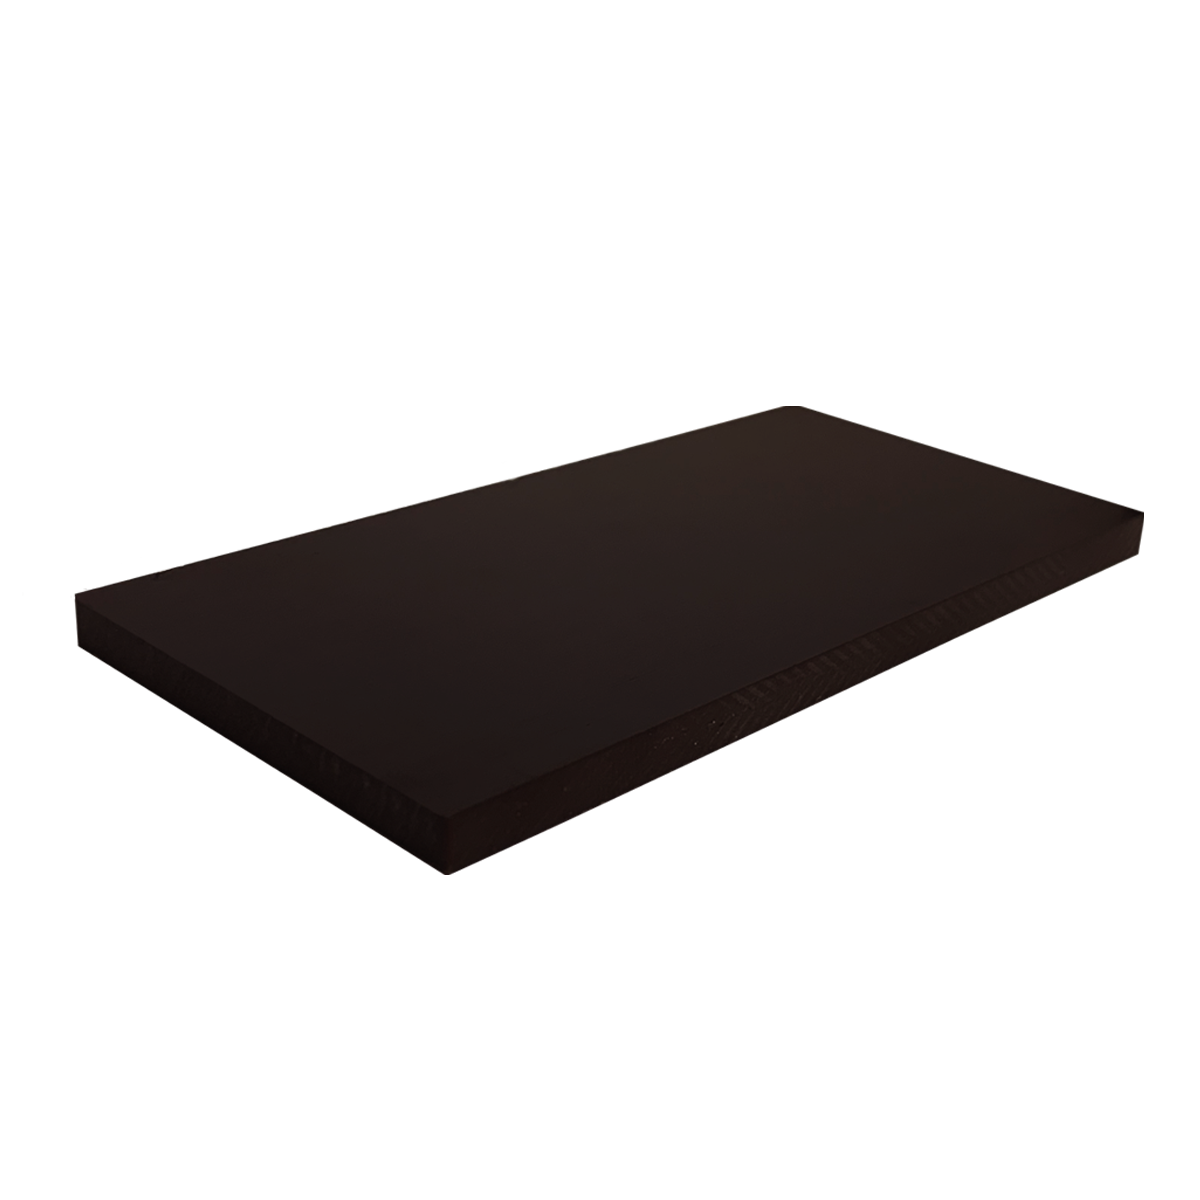 18 x 1025 x 1050 mm -- Hartpapier Platten Hp 2061, PFCP 201